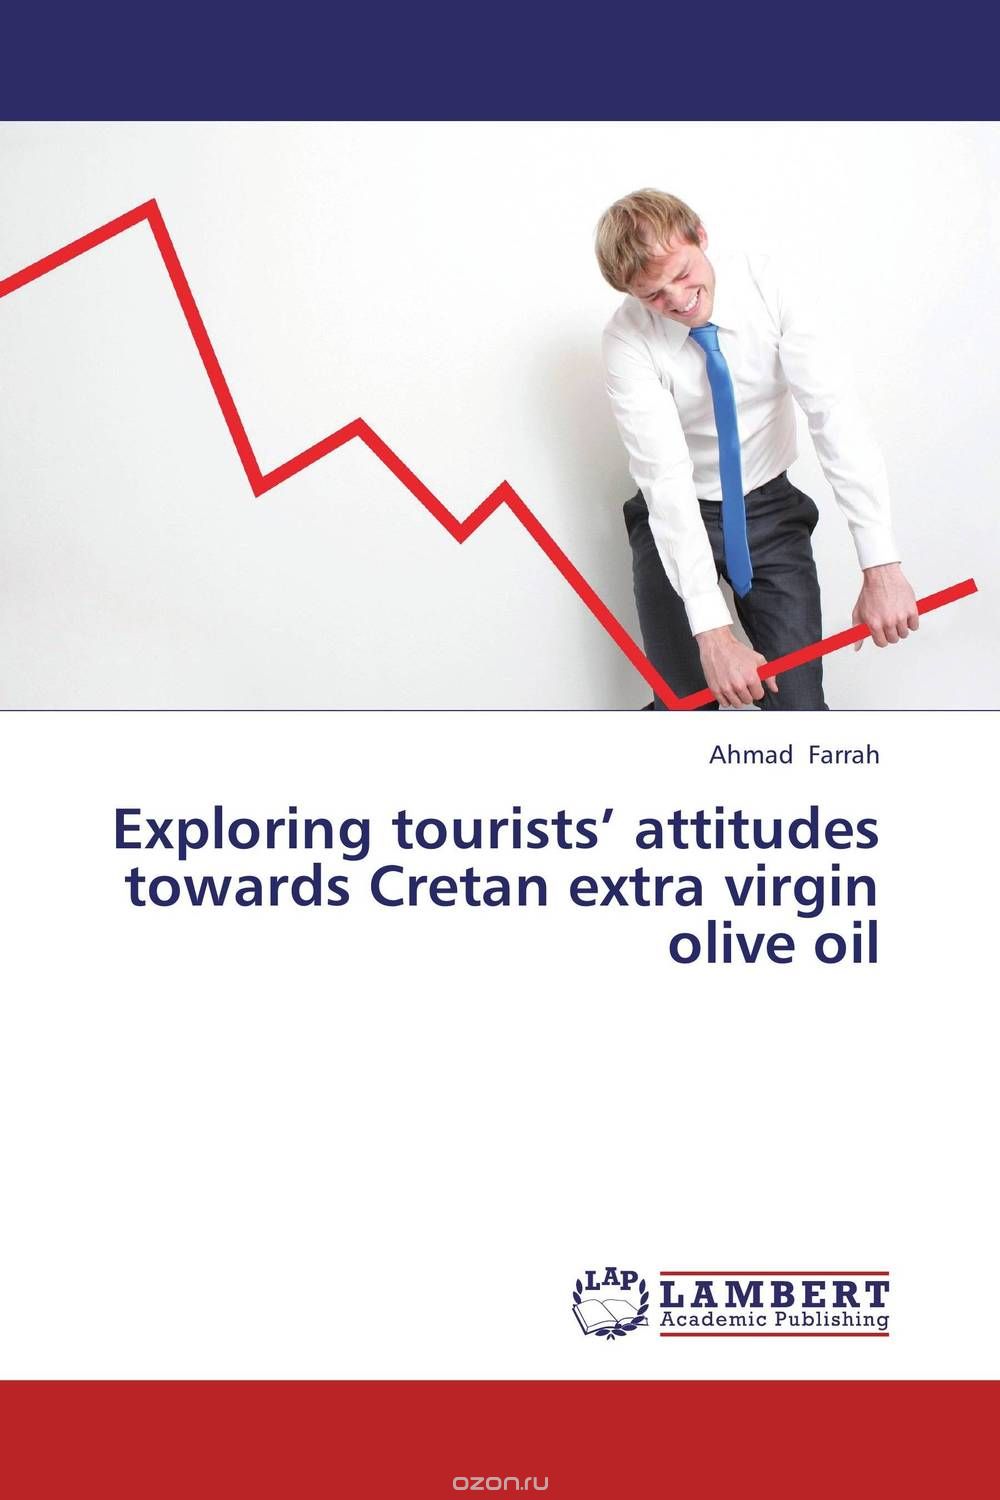 Скачать книгу "Exploring tourists’ attitudes towards Cretan extra virgin olive oil"